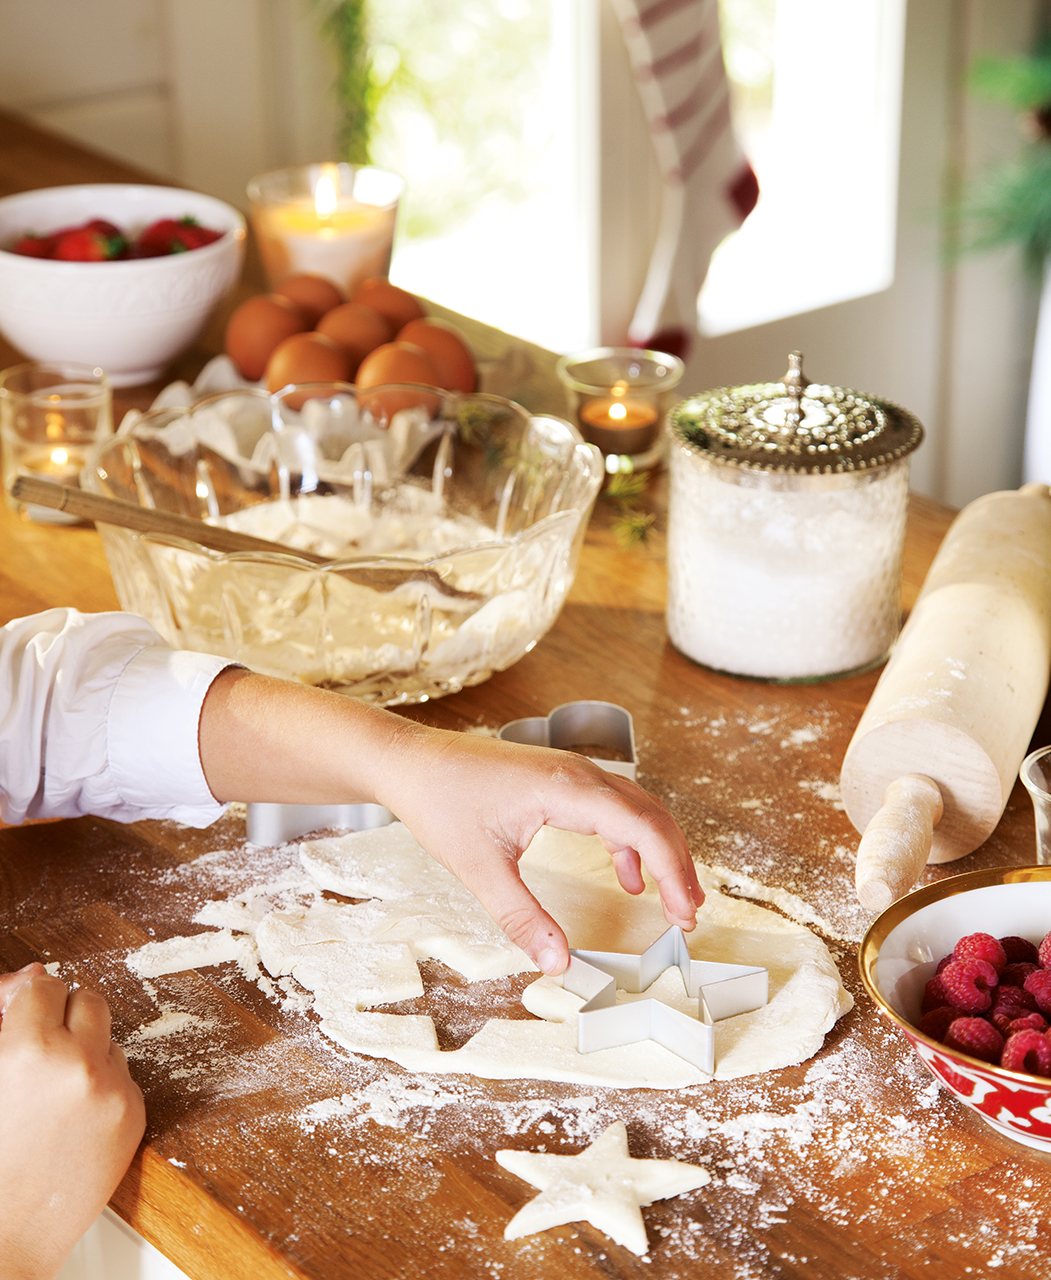 Detalle de mano con pasta y moldes para hacer galletas. Los cortapastas